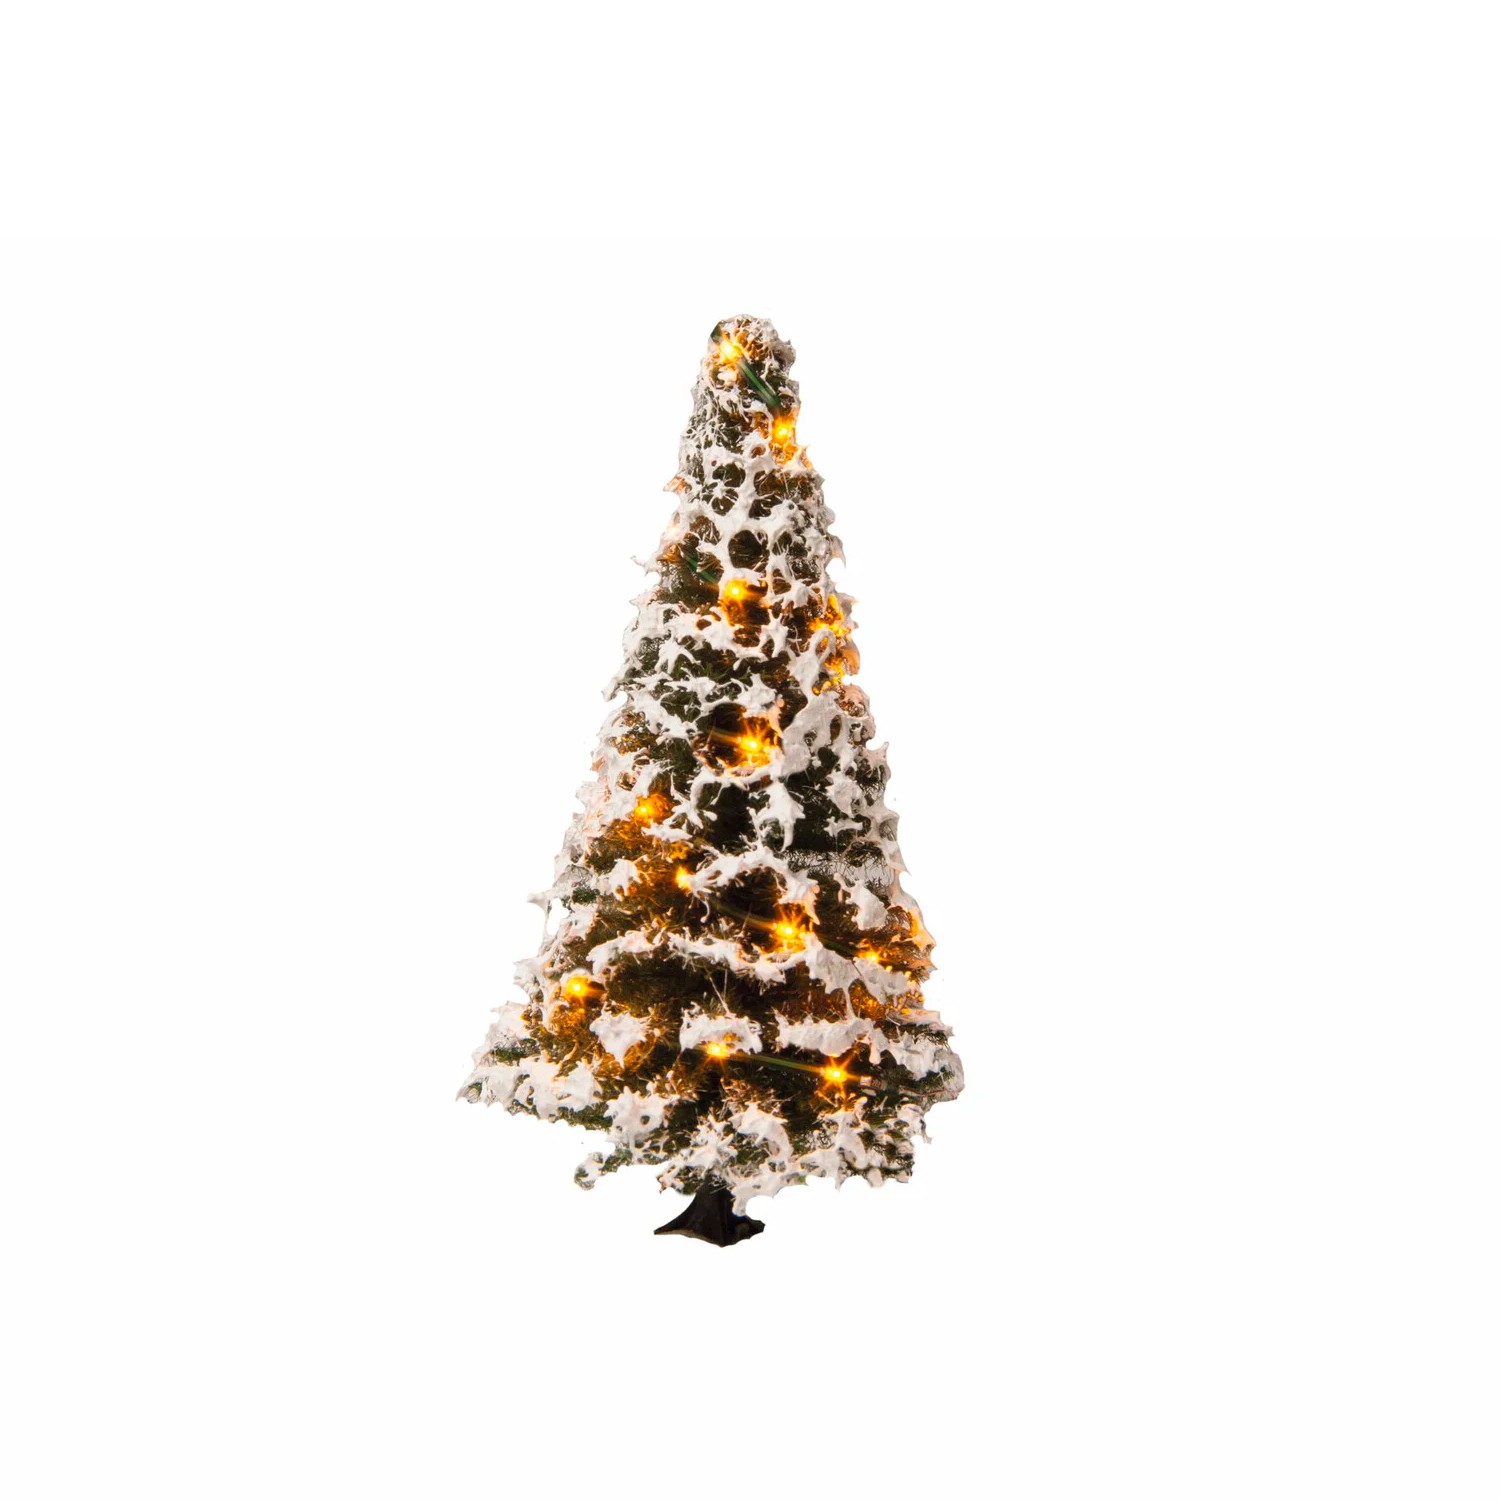 Train de Noël pour sapin - Acheter Luminaires et décoration - L